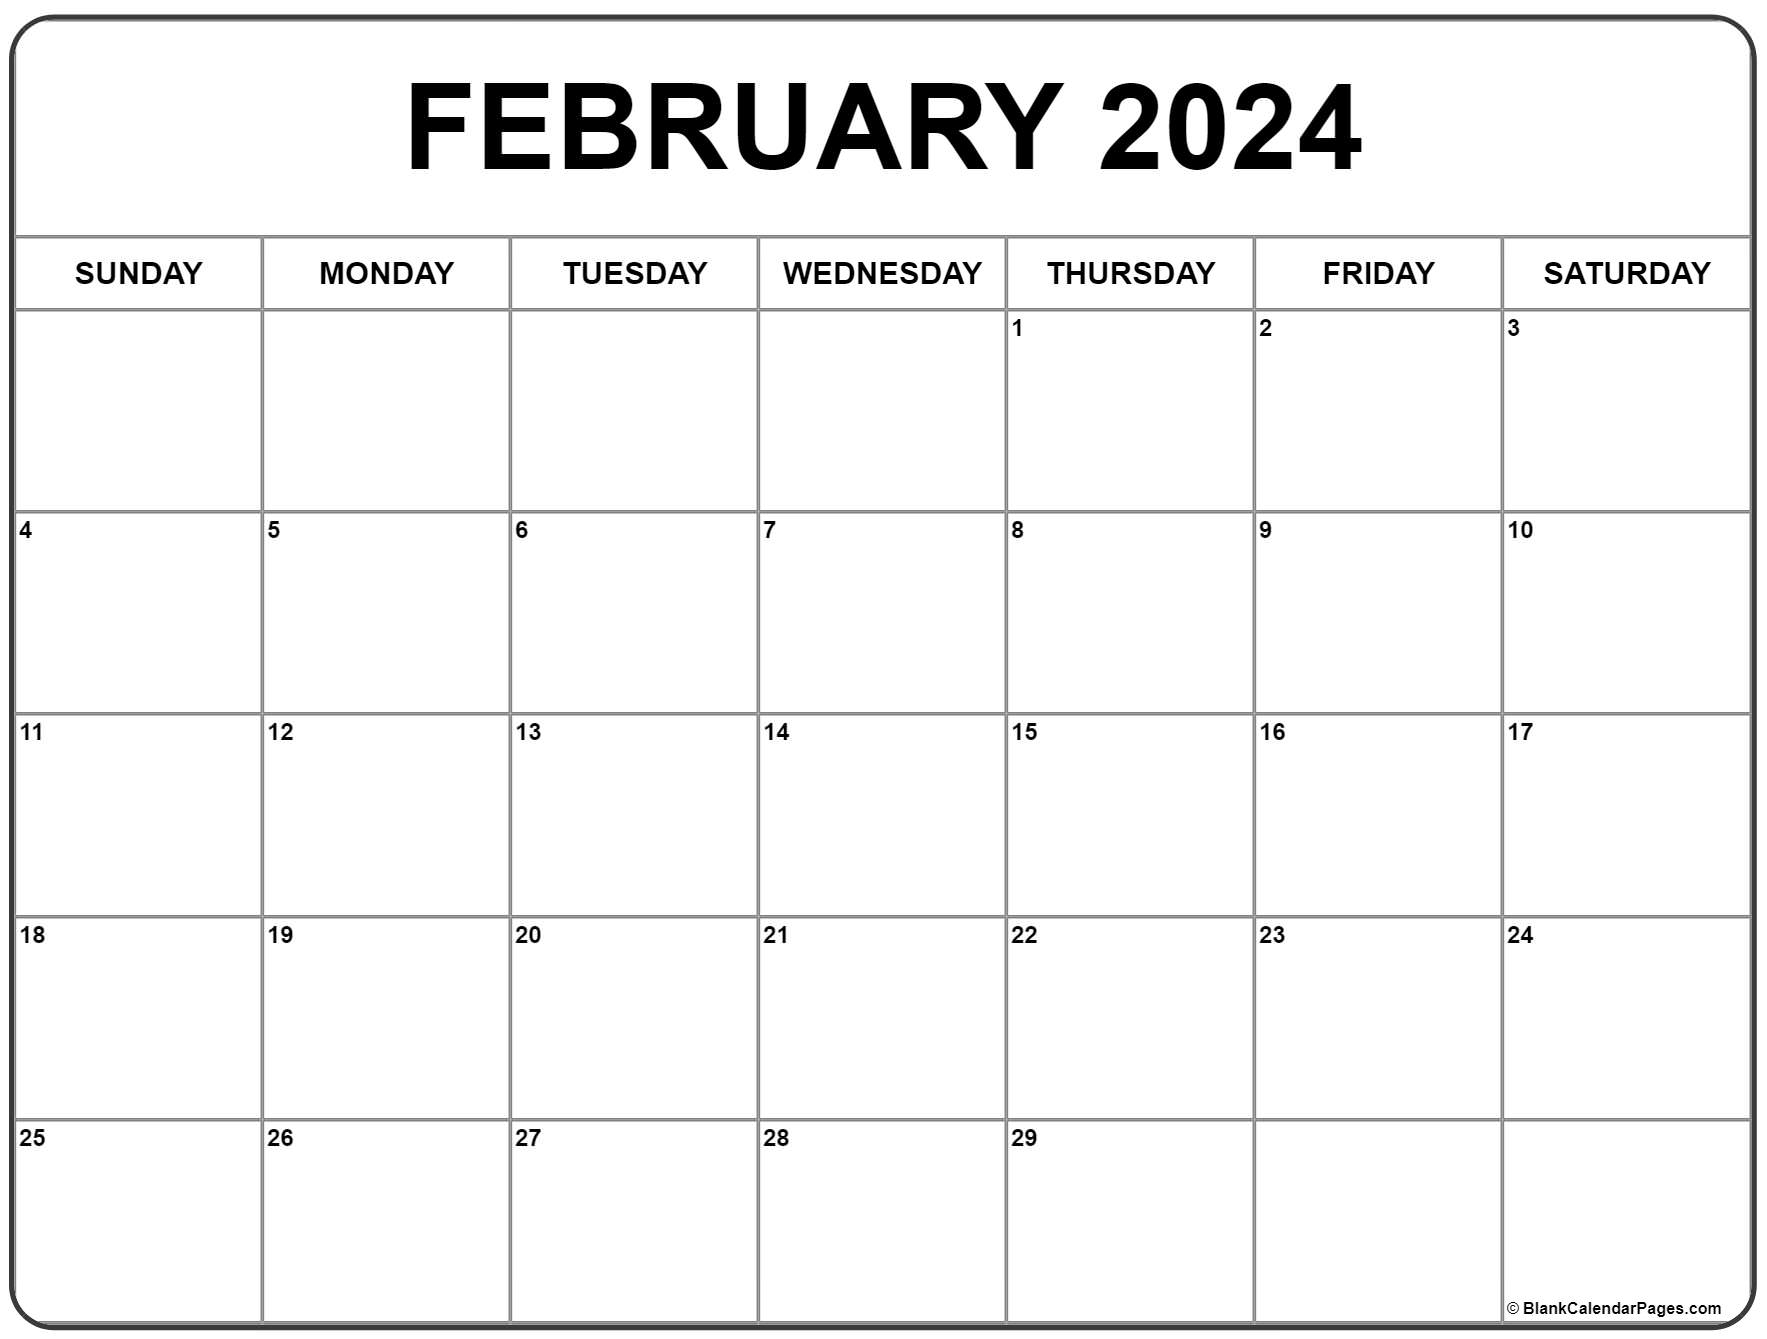 February 2024 Calendar | Free Printable Calendar for February Calendar 2024 Printable